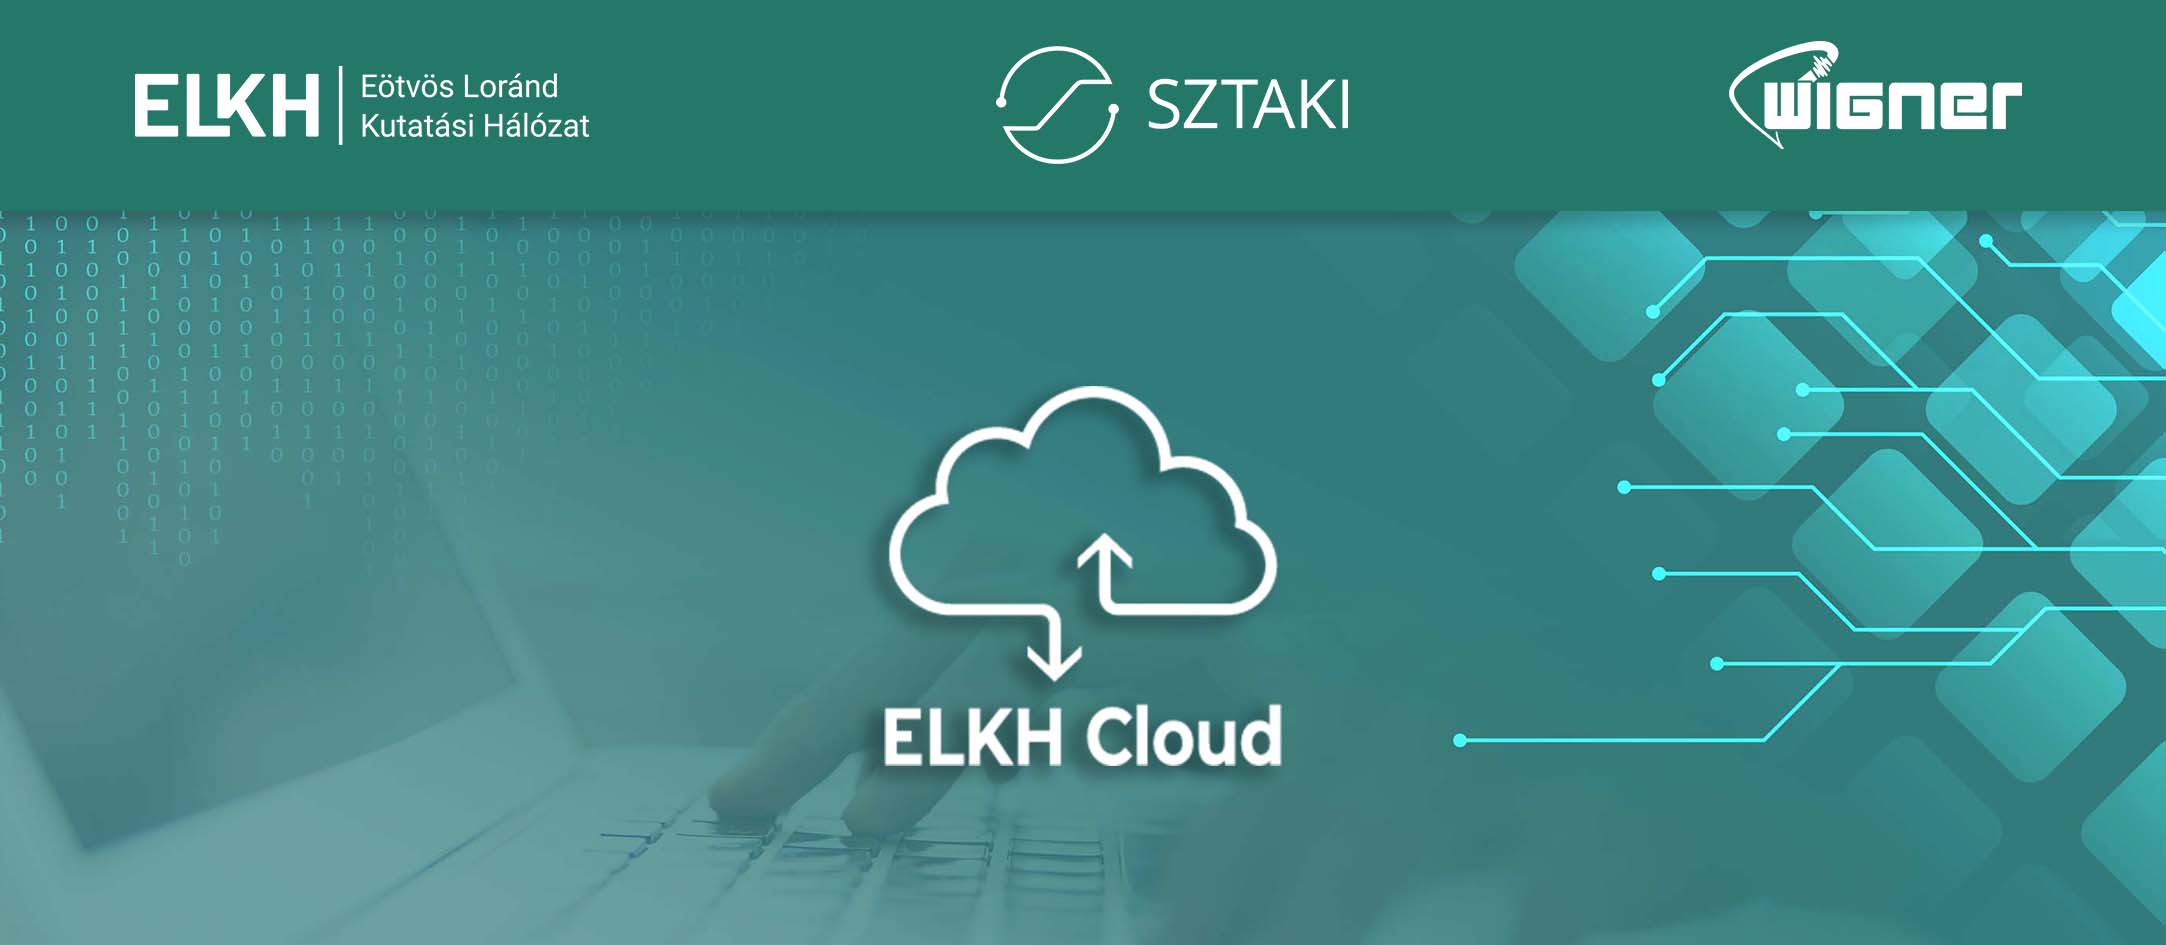 elkh_cloud_logo